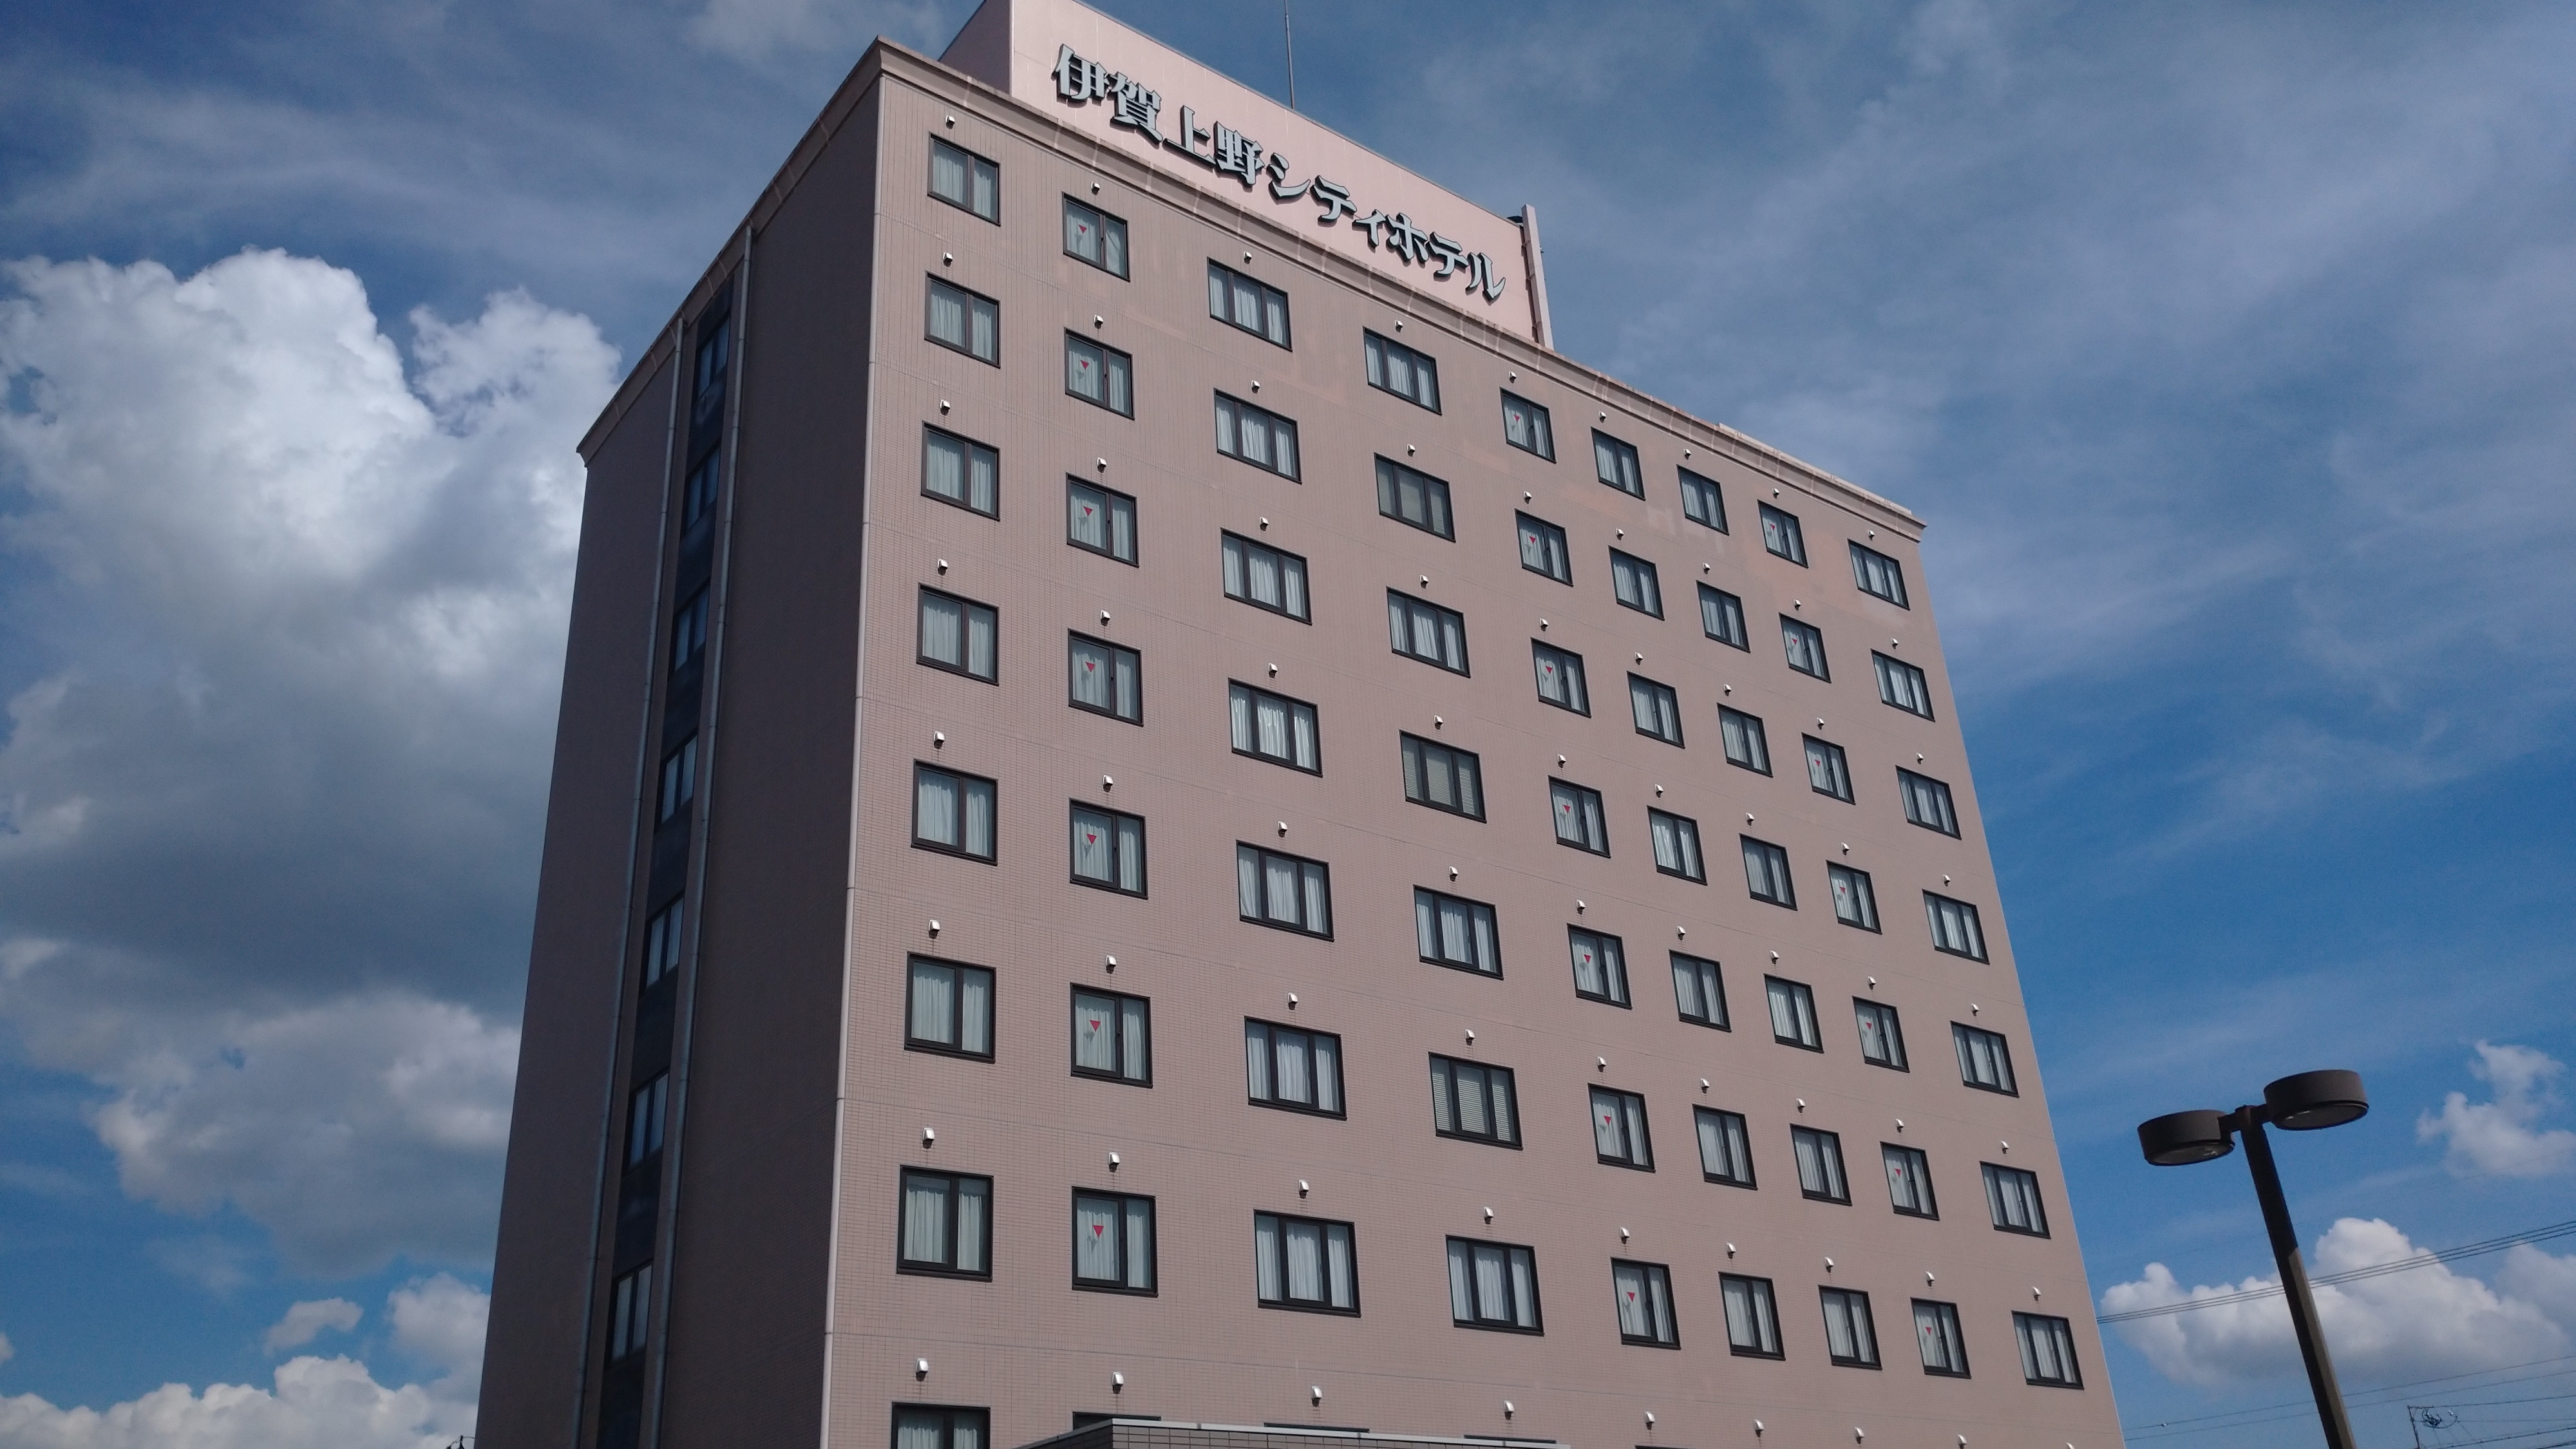 伊賀上野シティホテル 旧上野シティホテル 宿泊予約 楽天トラベル